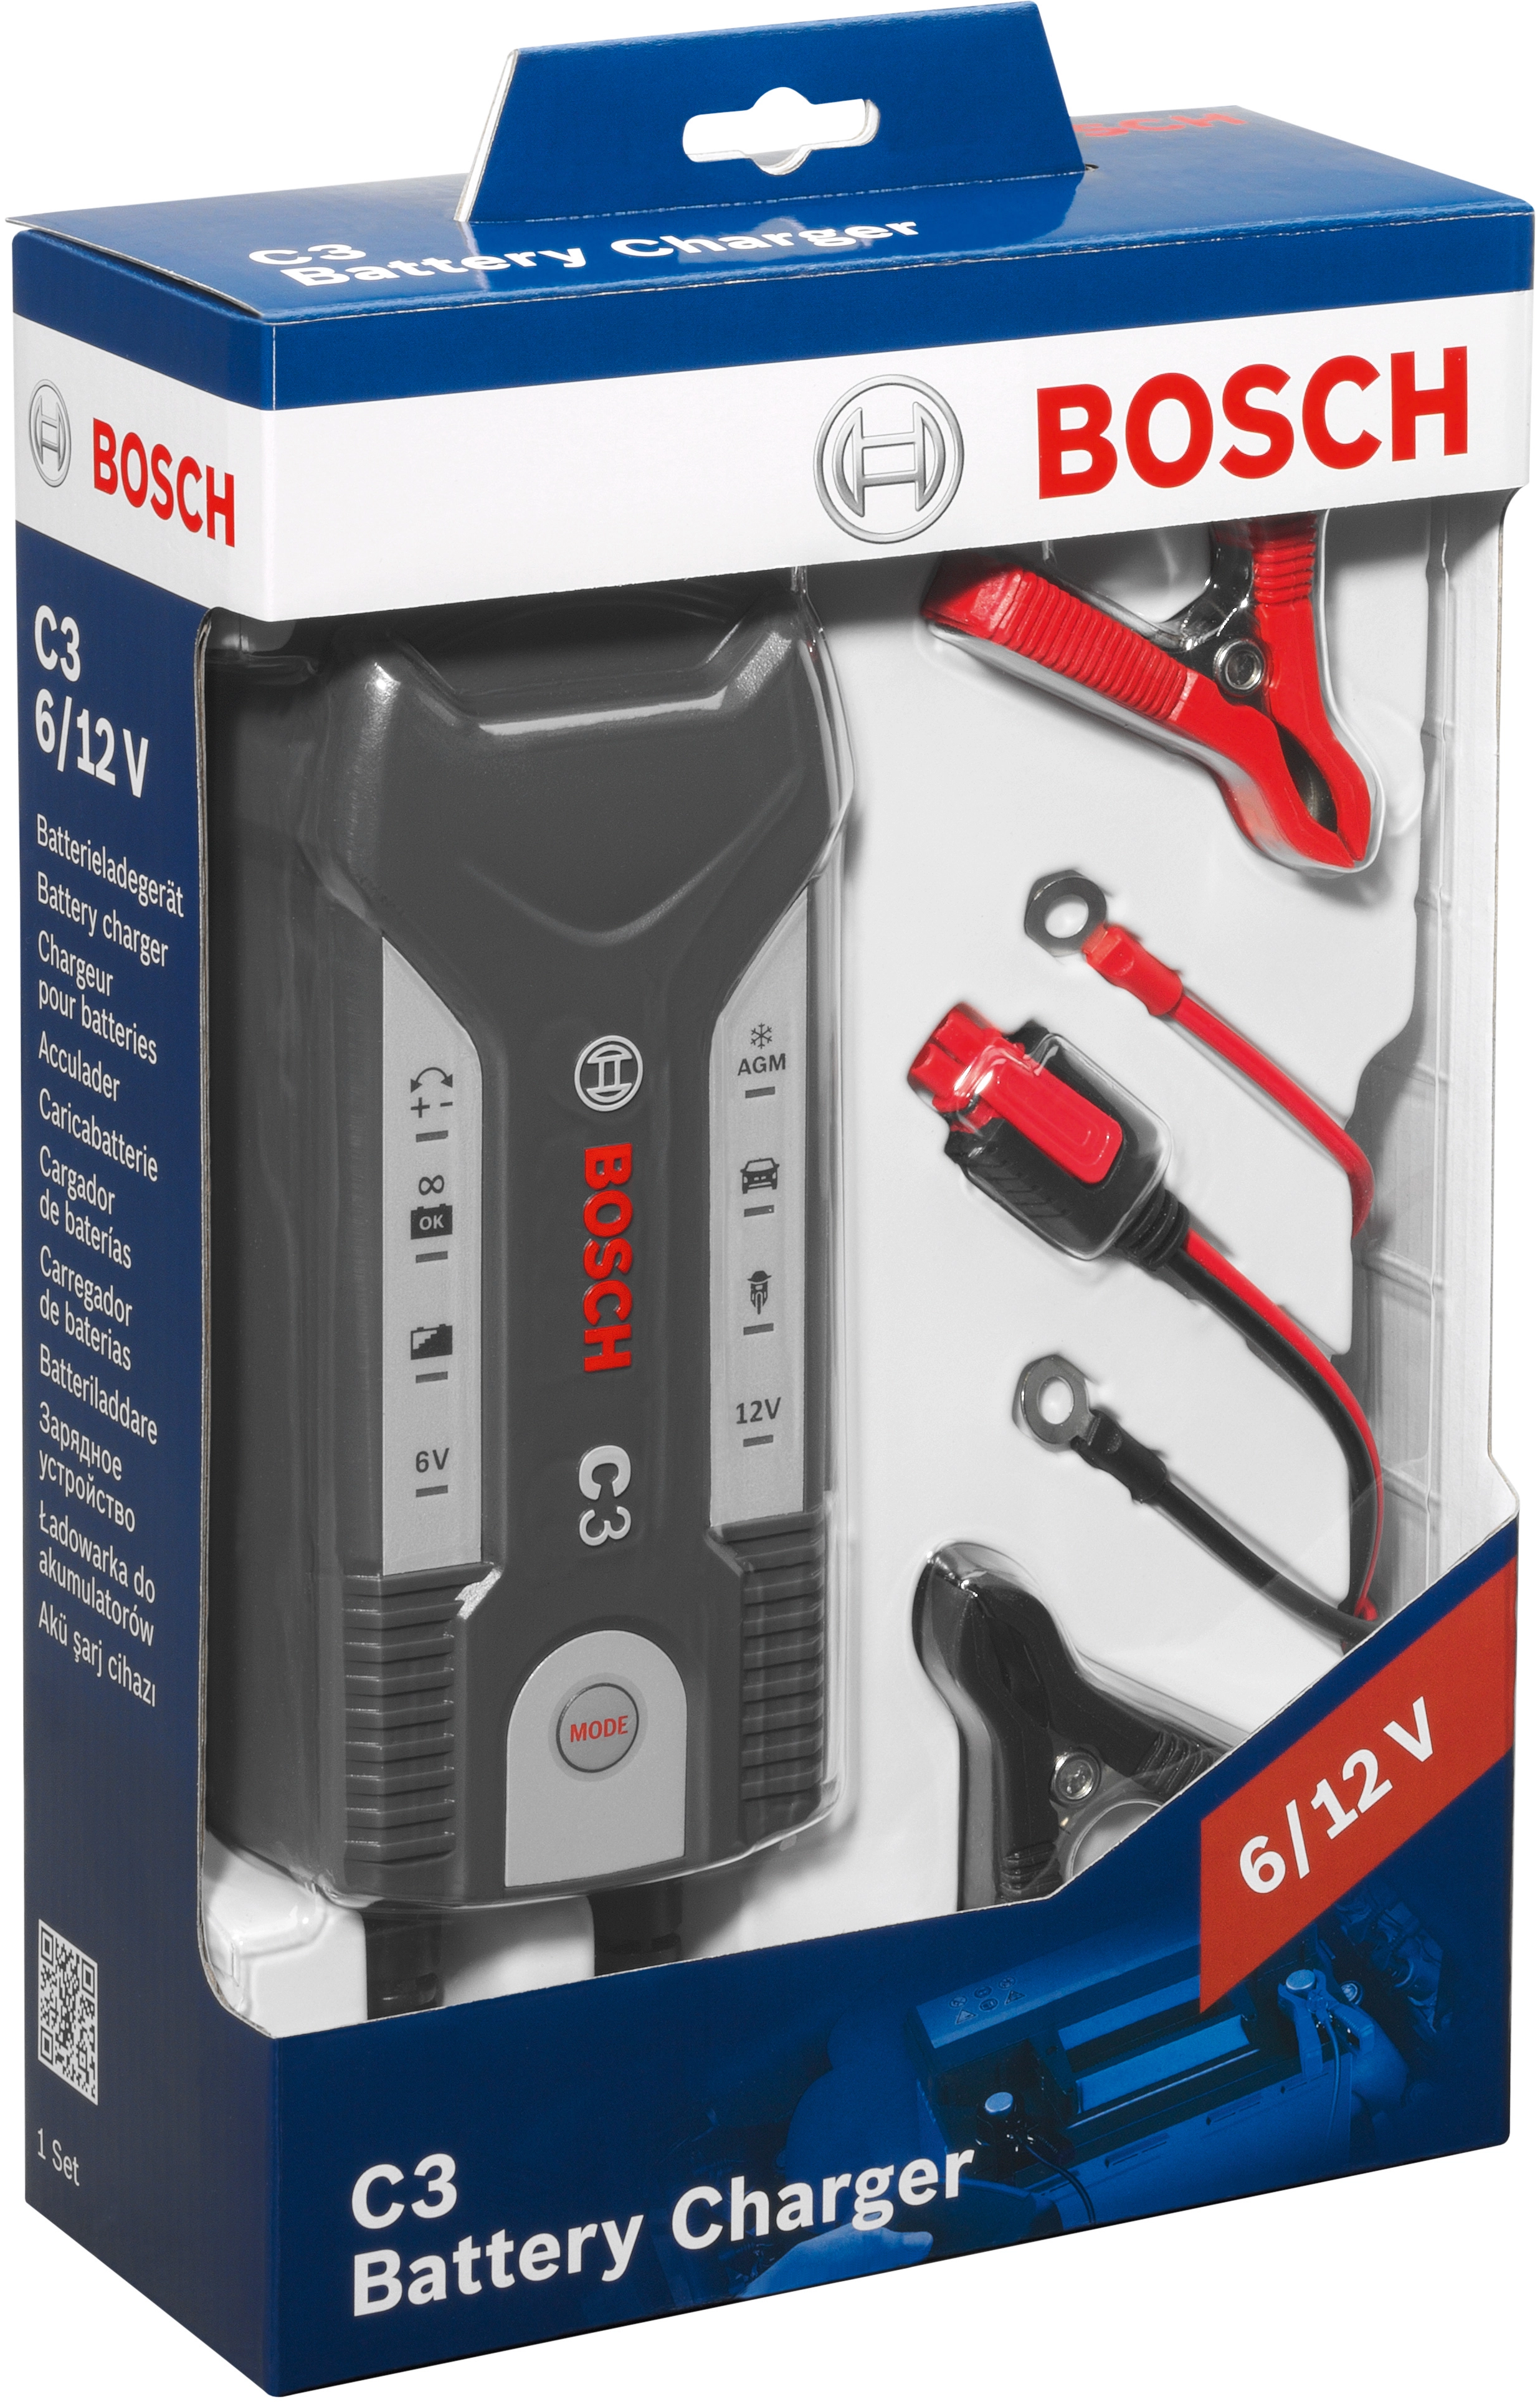 Bosch C3 Batterieladegerät